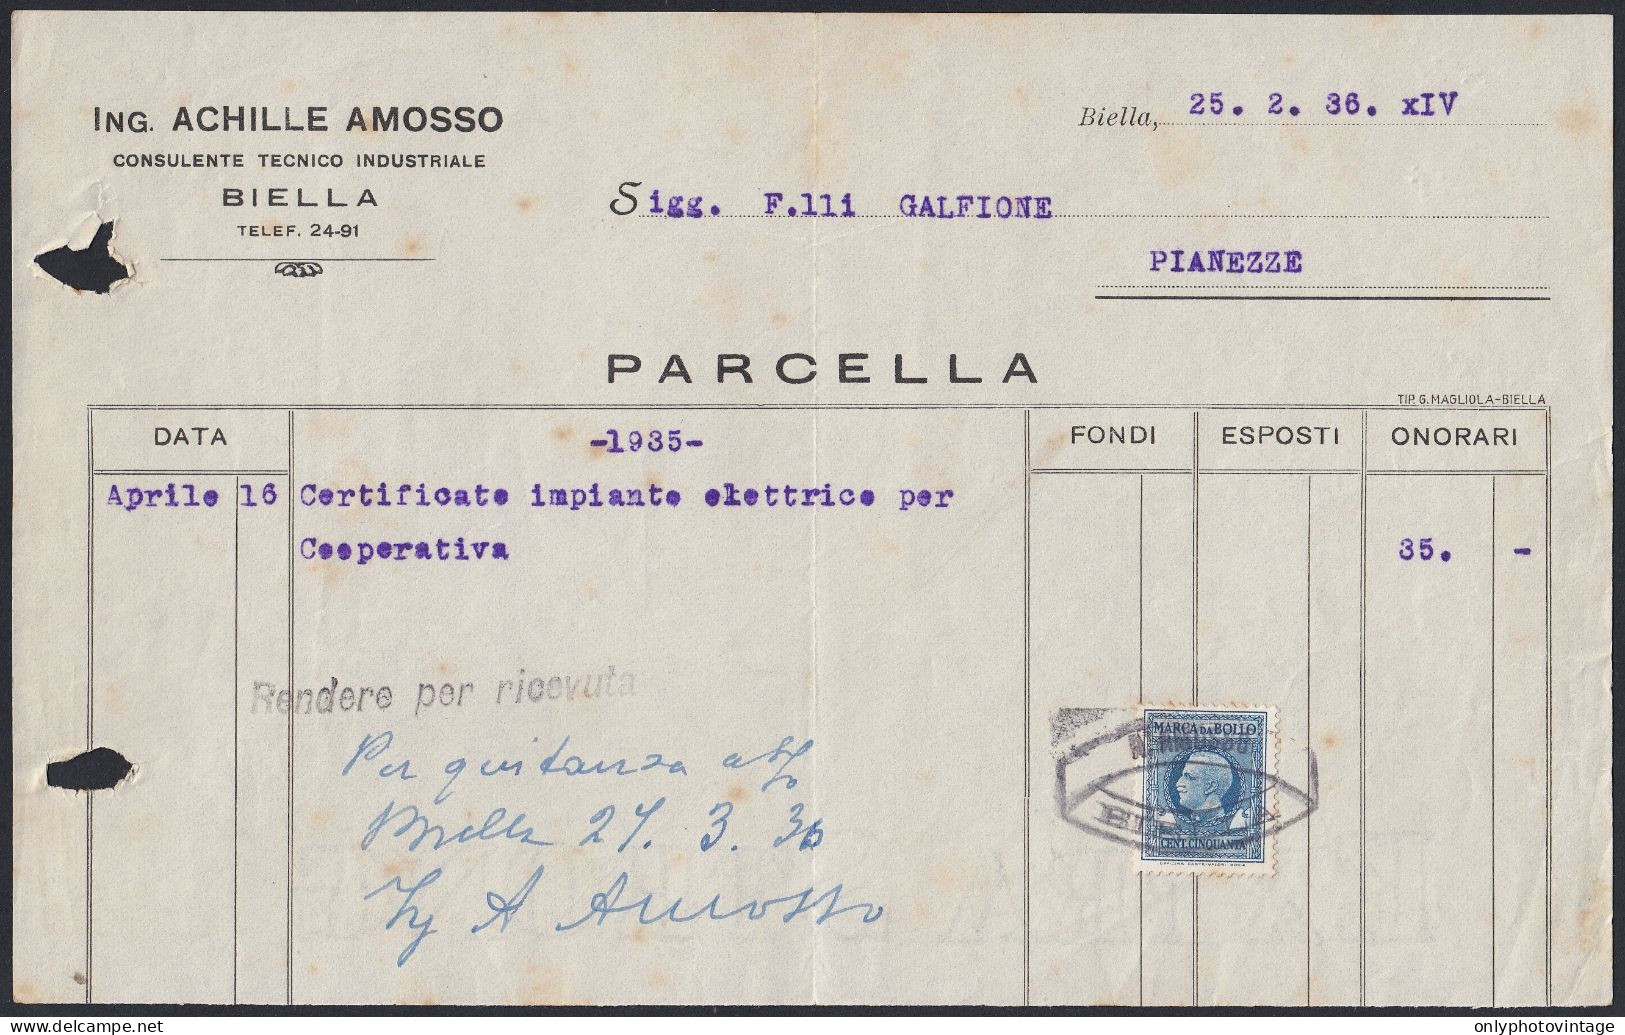 Biella 1936 - Ing. Achille Amosso - Consulente Tecnico Industriale - Italien